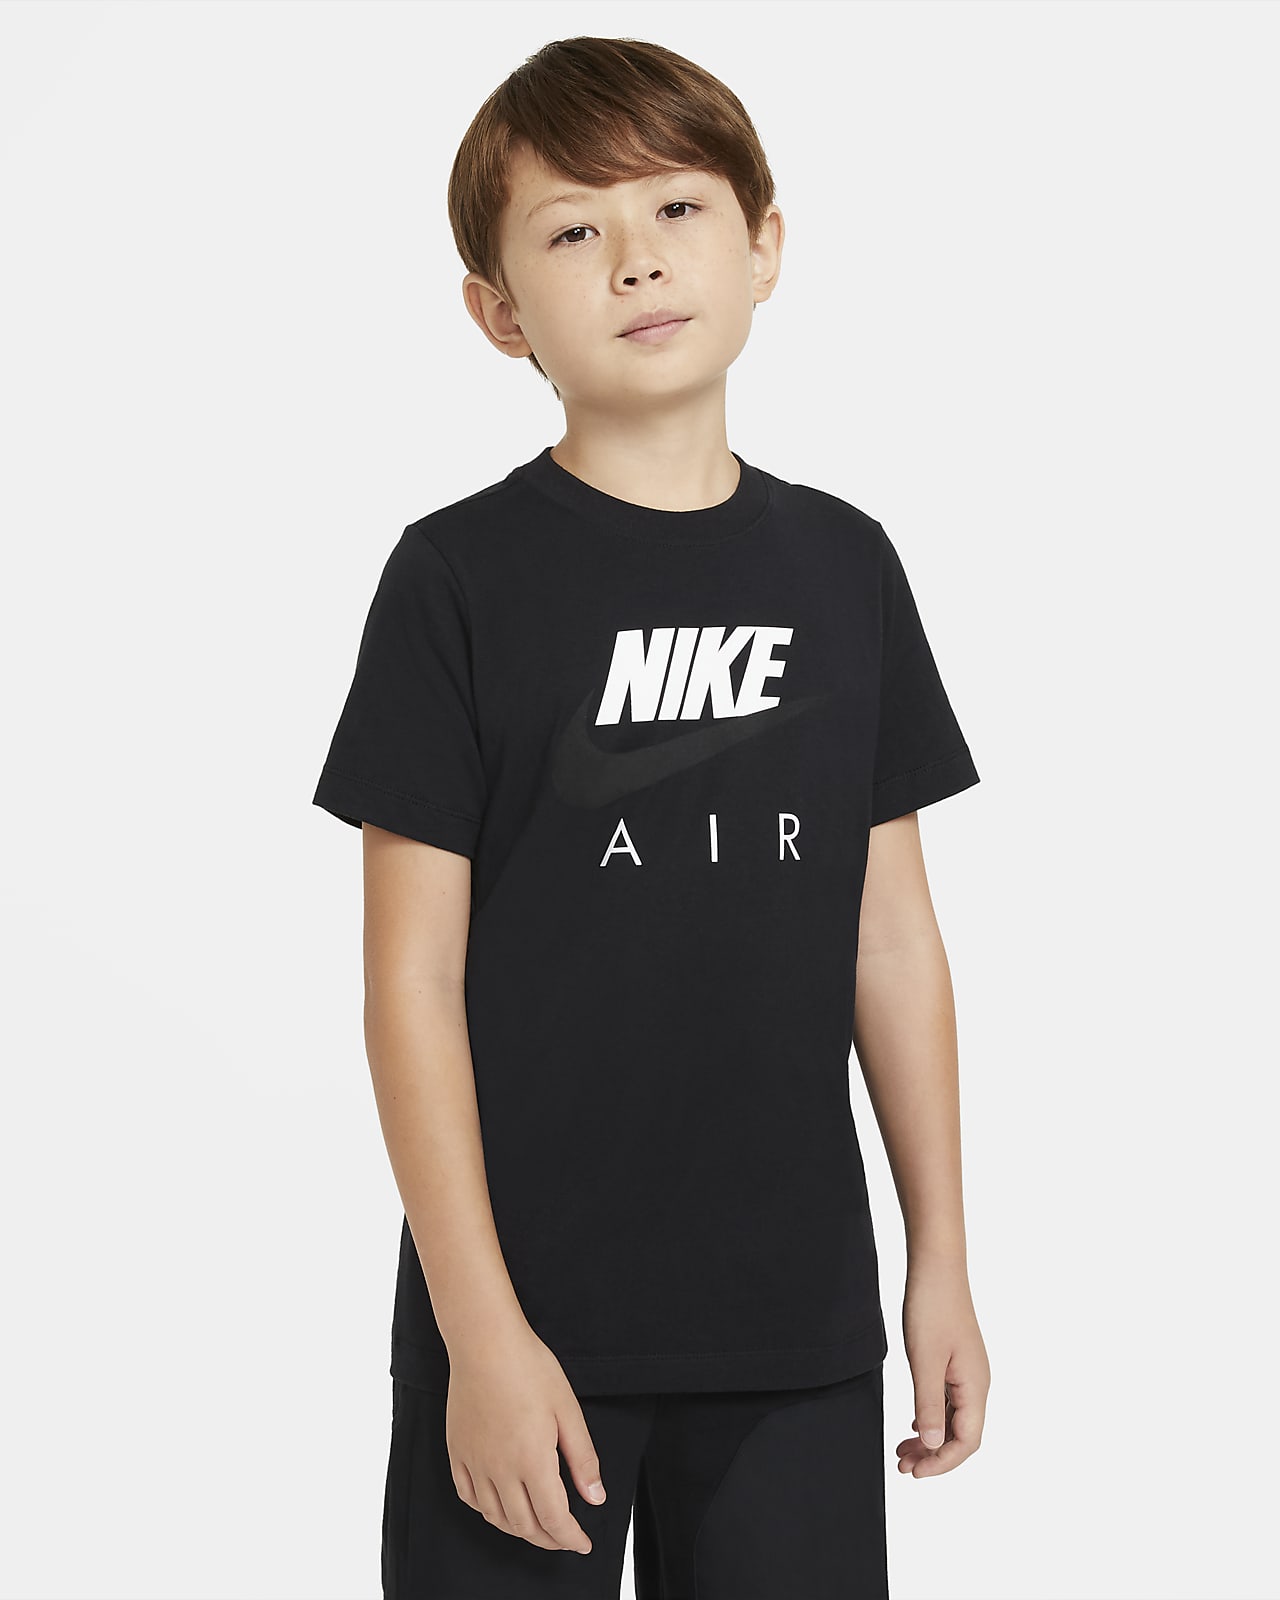 Mareo pacífico su Nike Air Camiseta - Niño. Nike ES